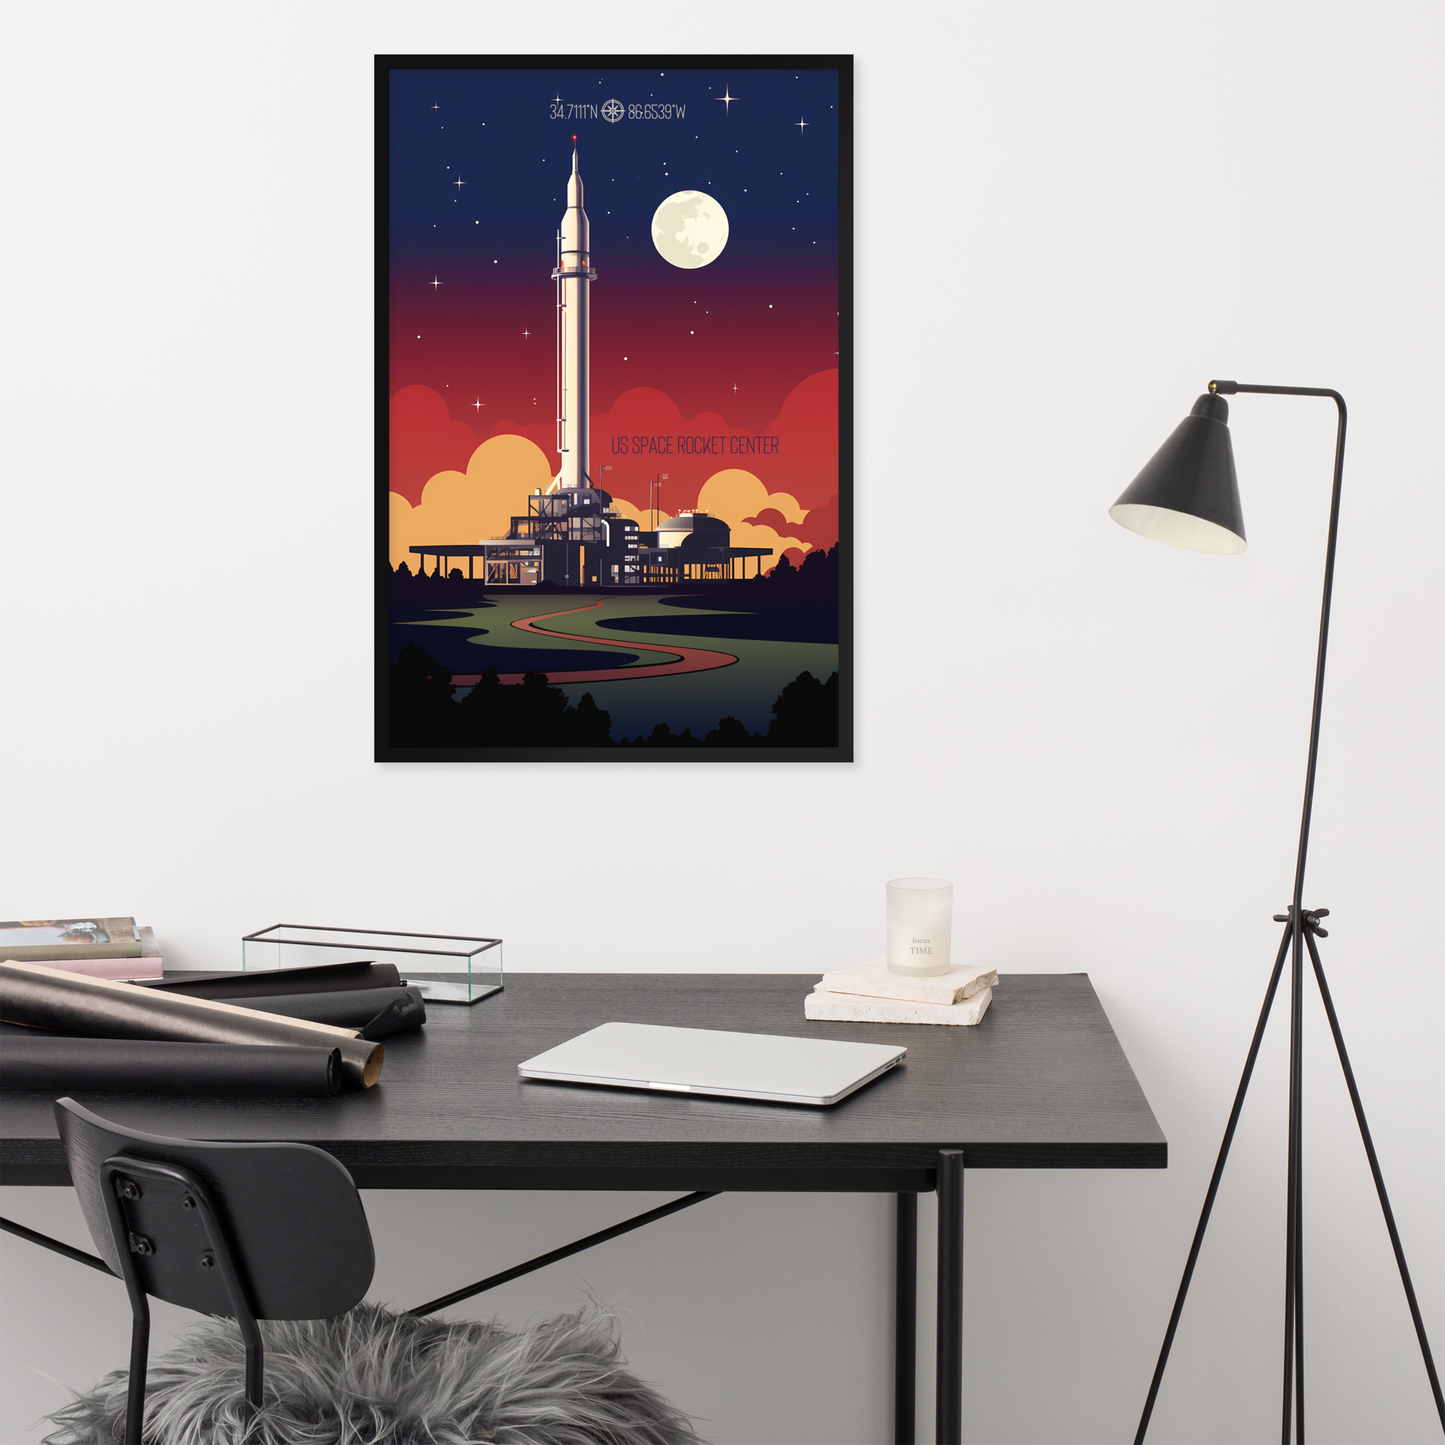 Alabama - US Space Rocket Center (Framed Poster)